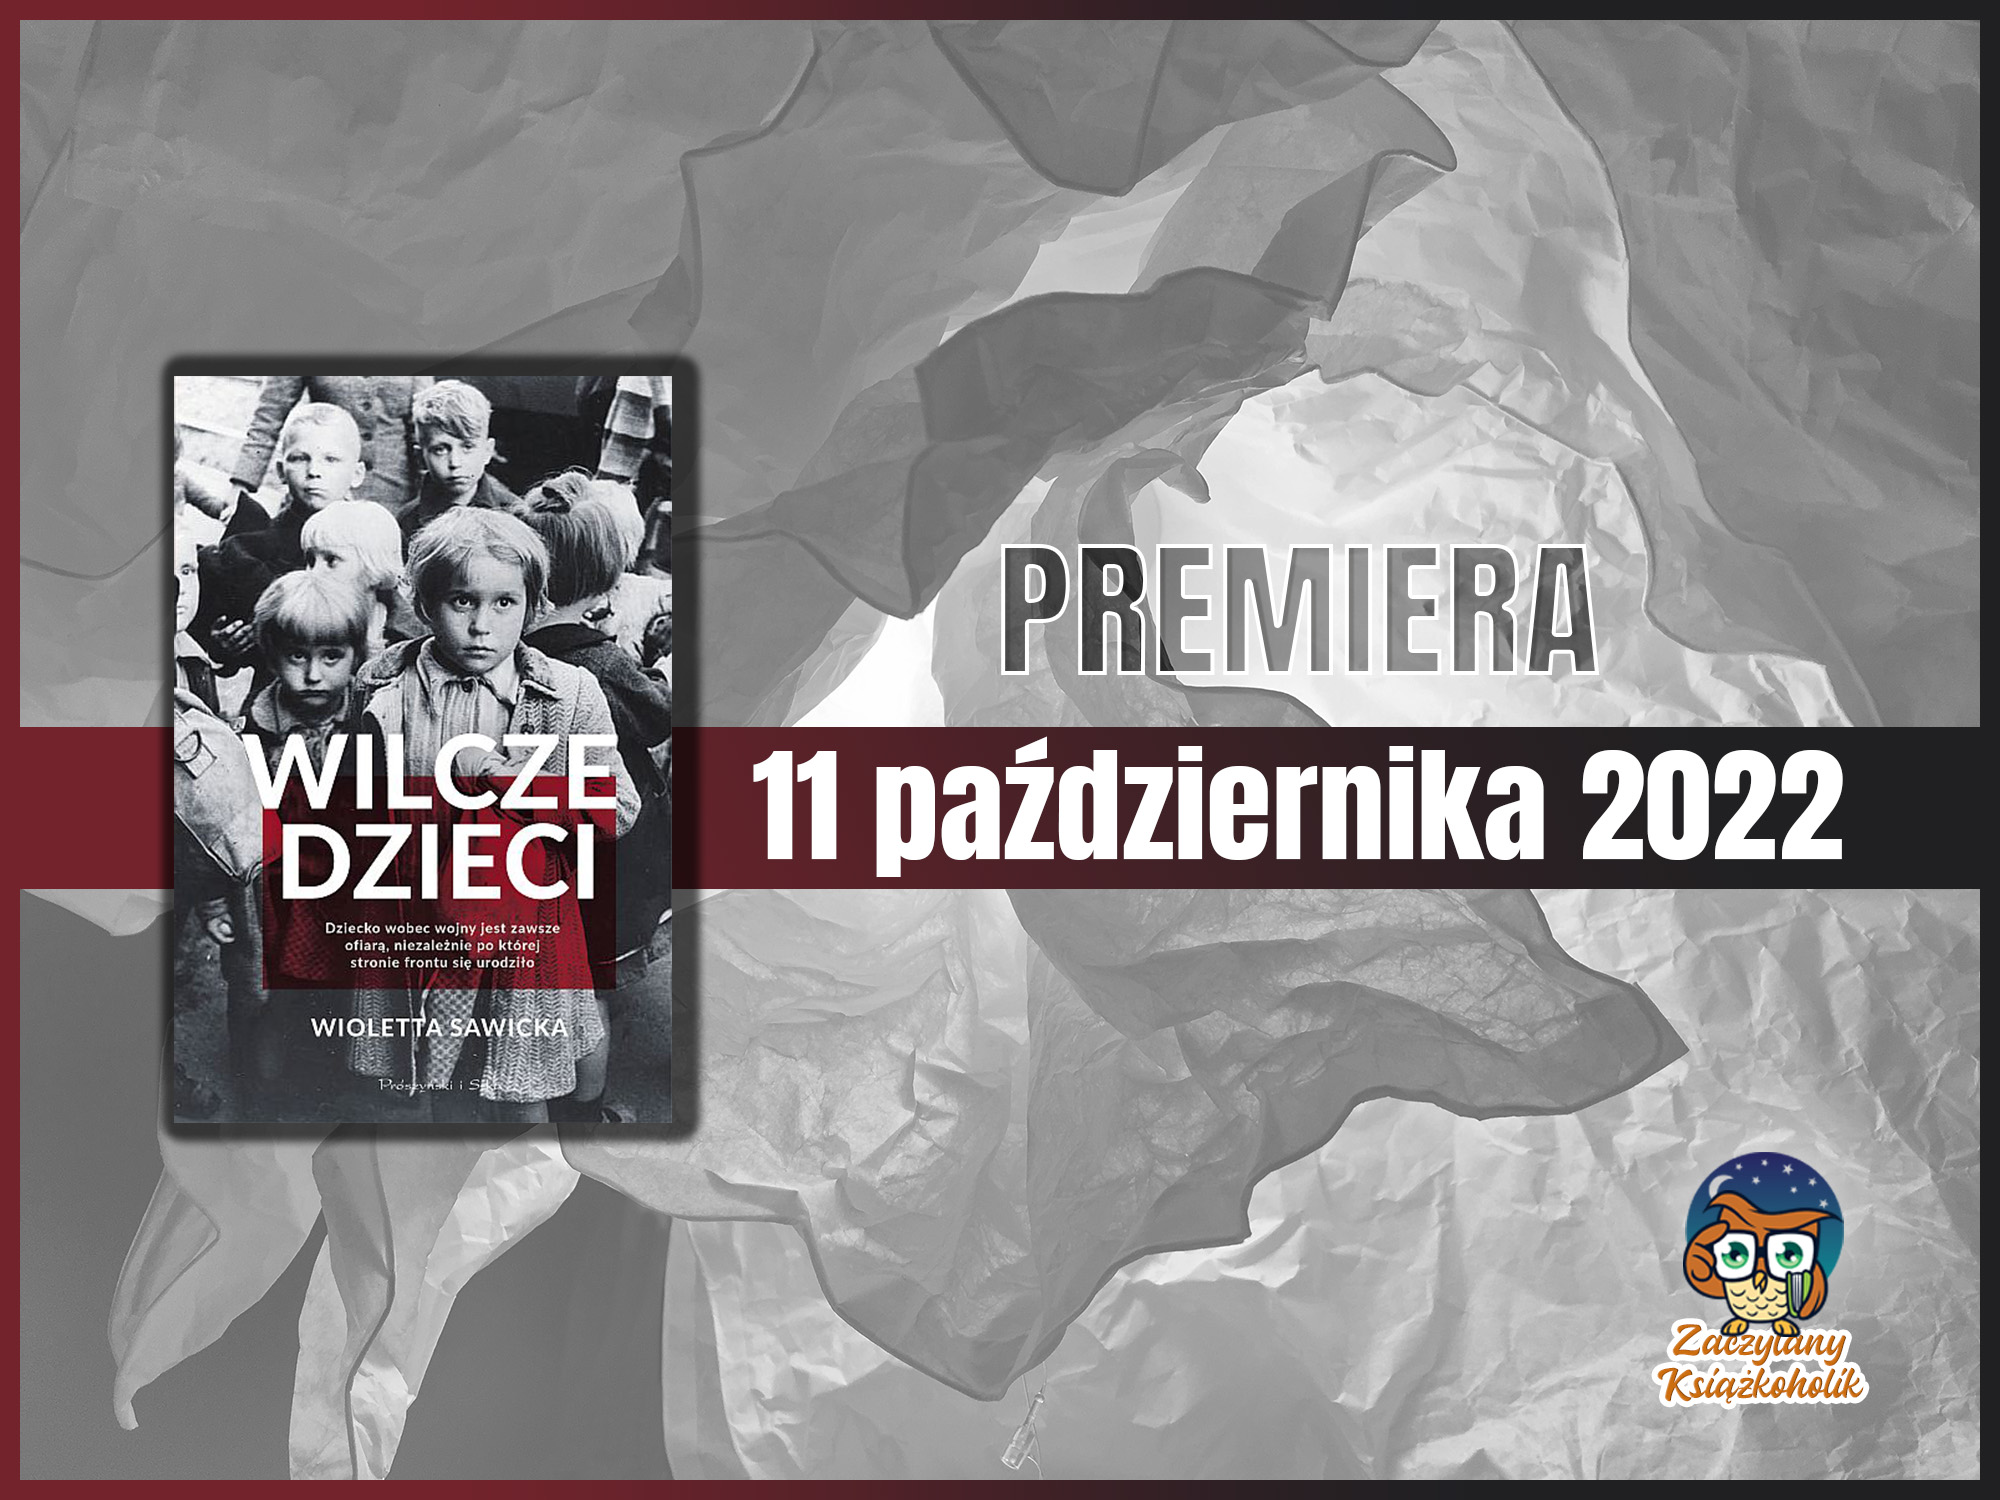 Wilcze dzieci-Wioletta Sawicka-zaczytanyksiazkoholik.pl